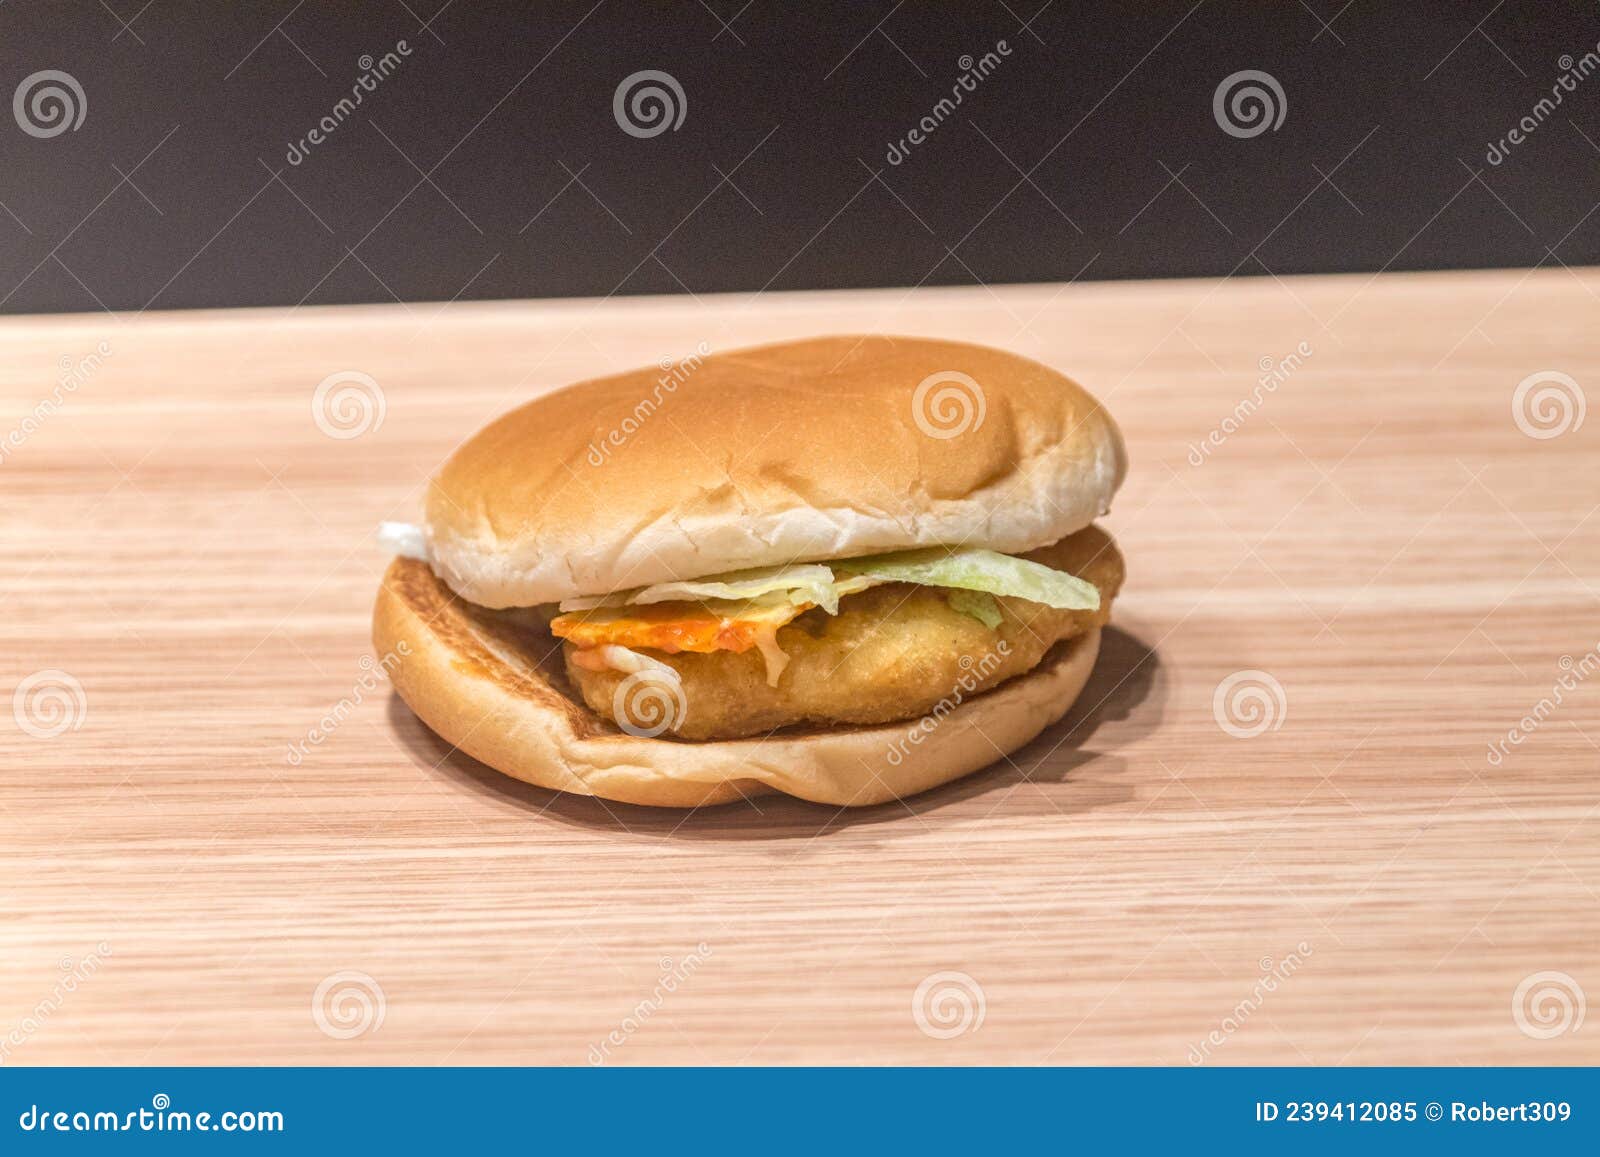 mcdonalds chicken salsa sandwich